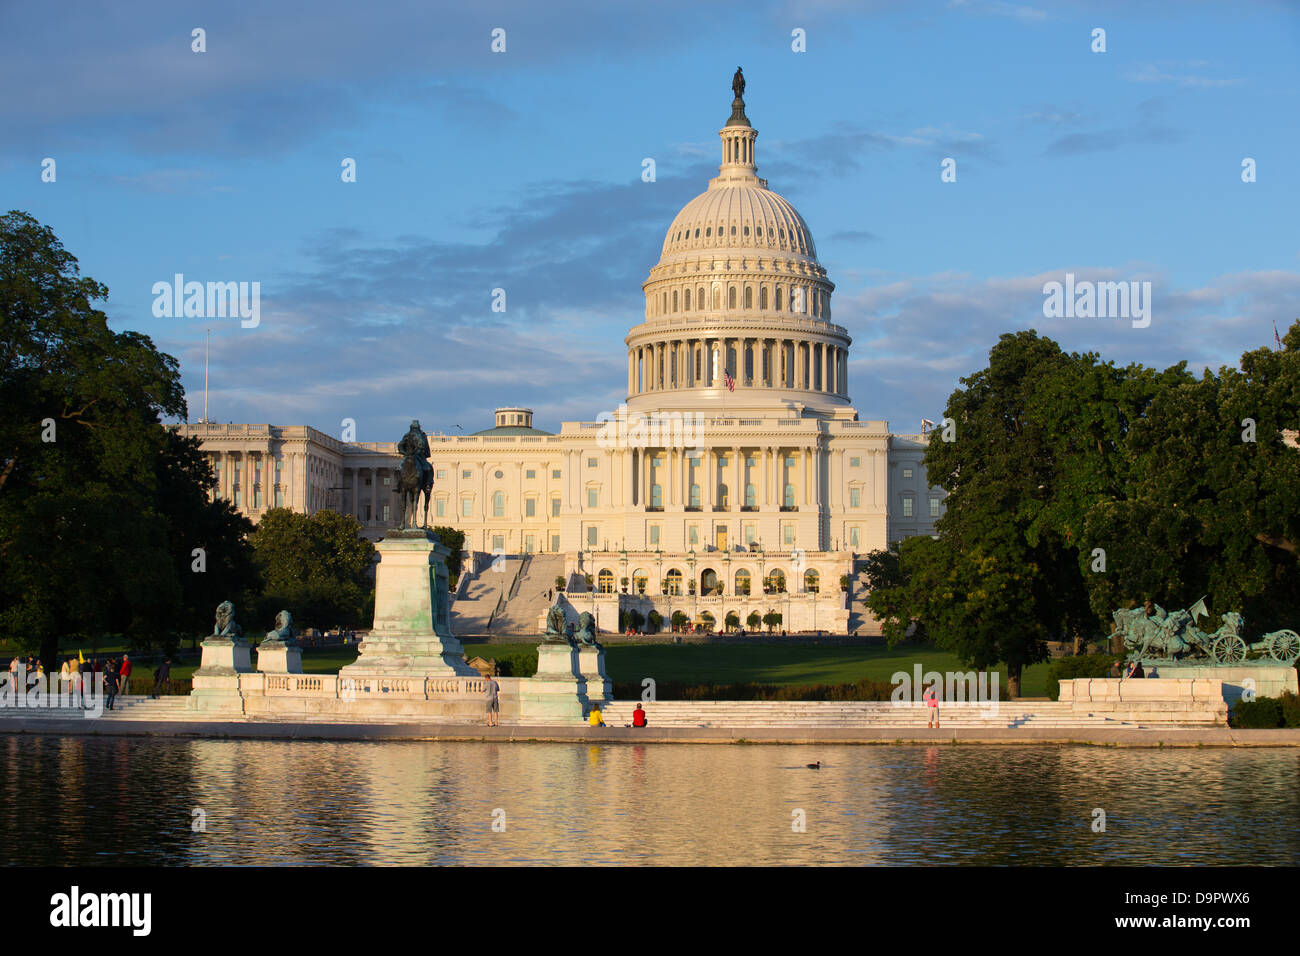 El edificio del Capitolio de EEUU al atardecer, Washington D.C., EE.UU. Foto de stock